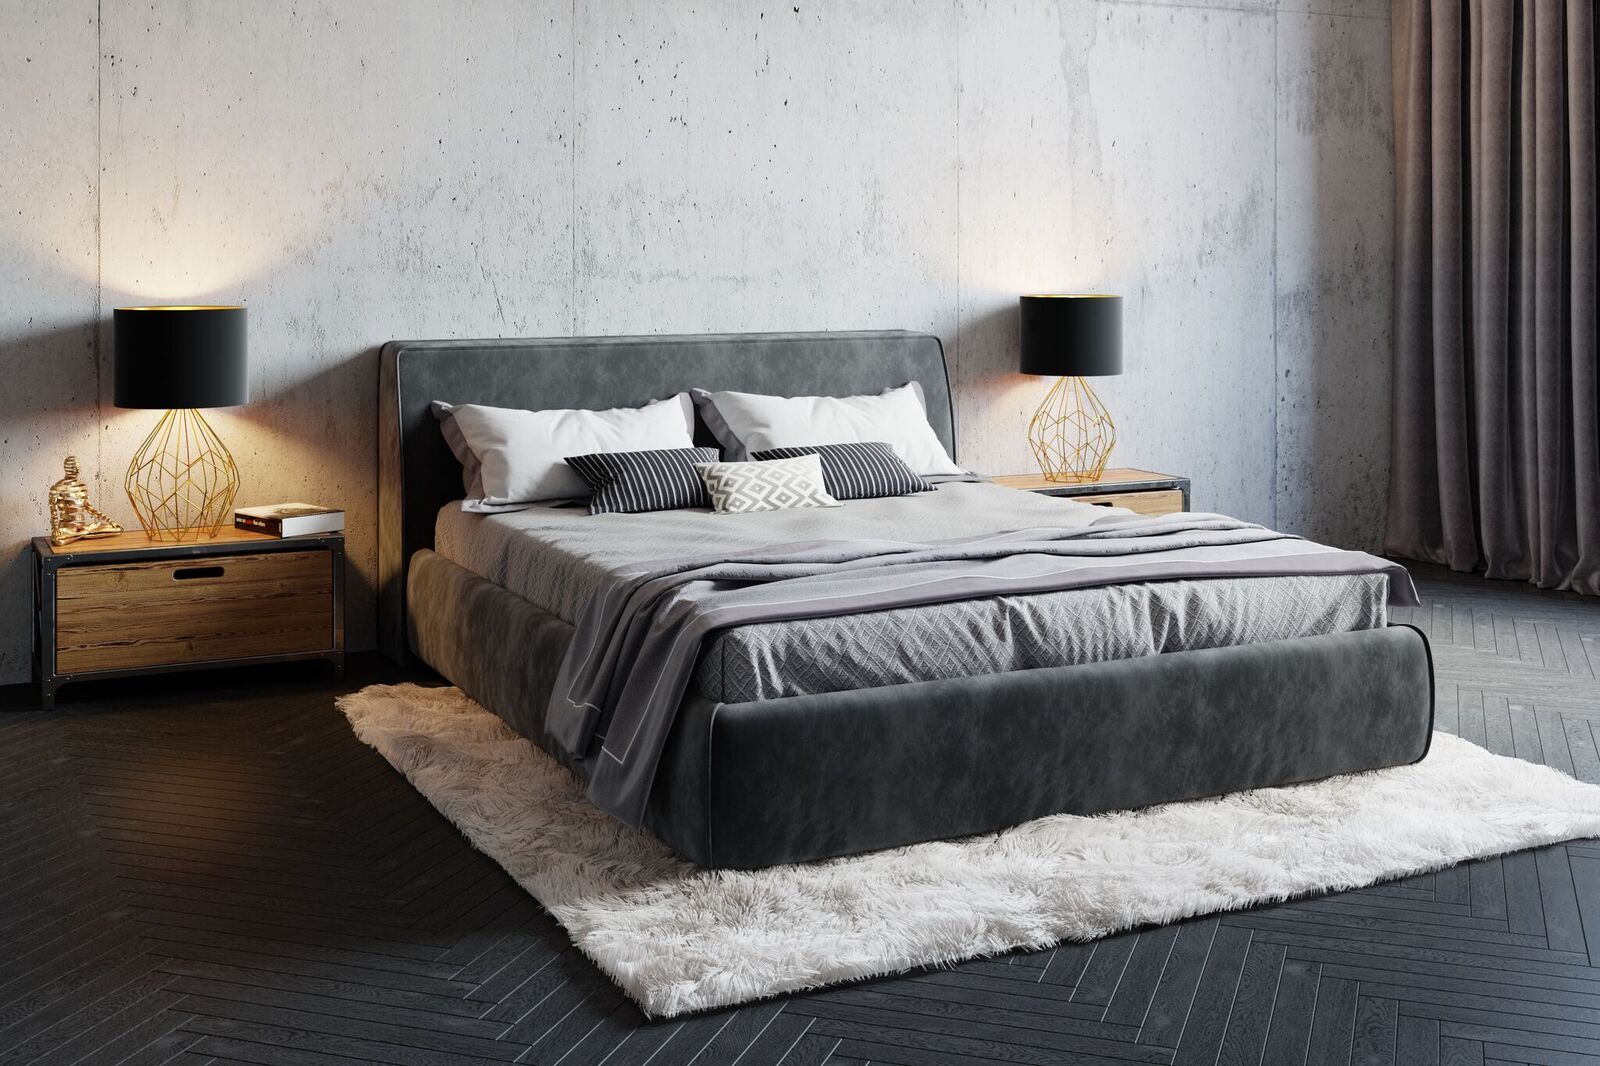 Правильно подобранный размер двуспальной кровати позволит сэкономить пространство спальни